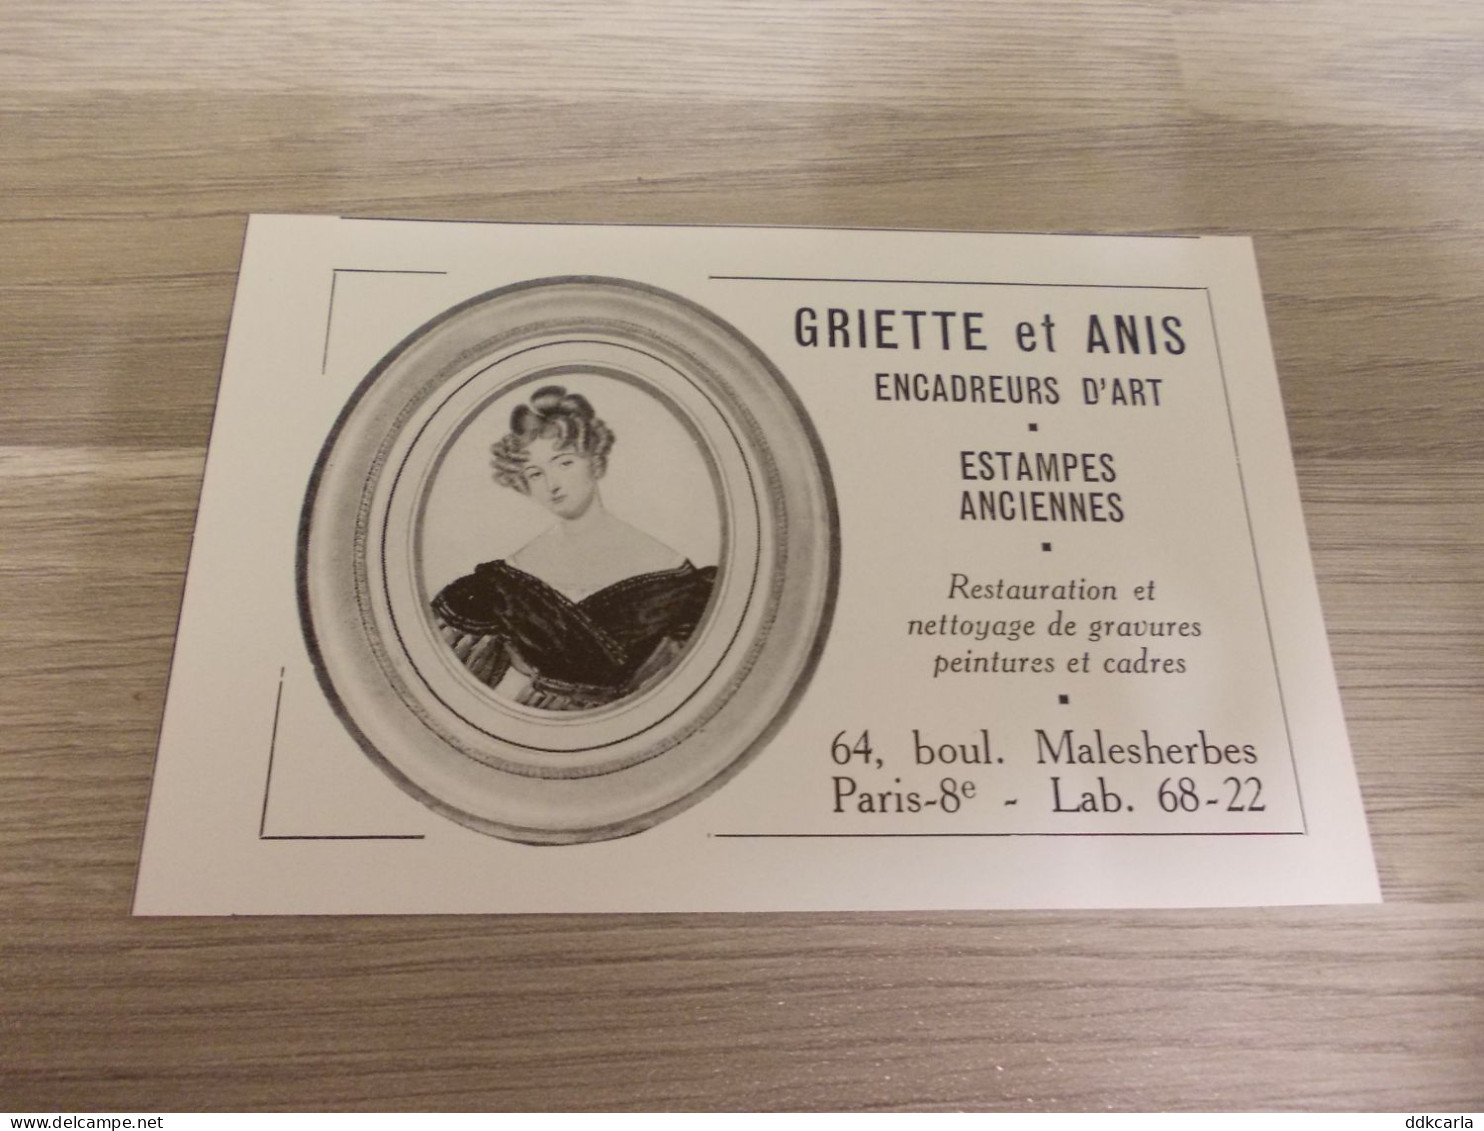 Reclame Advertentie Uit Oud Tijdschrift 1956 - Griette Et Anis Encadreurs D'Art - Malesherbes Paris - Advertising